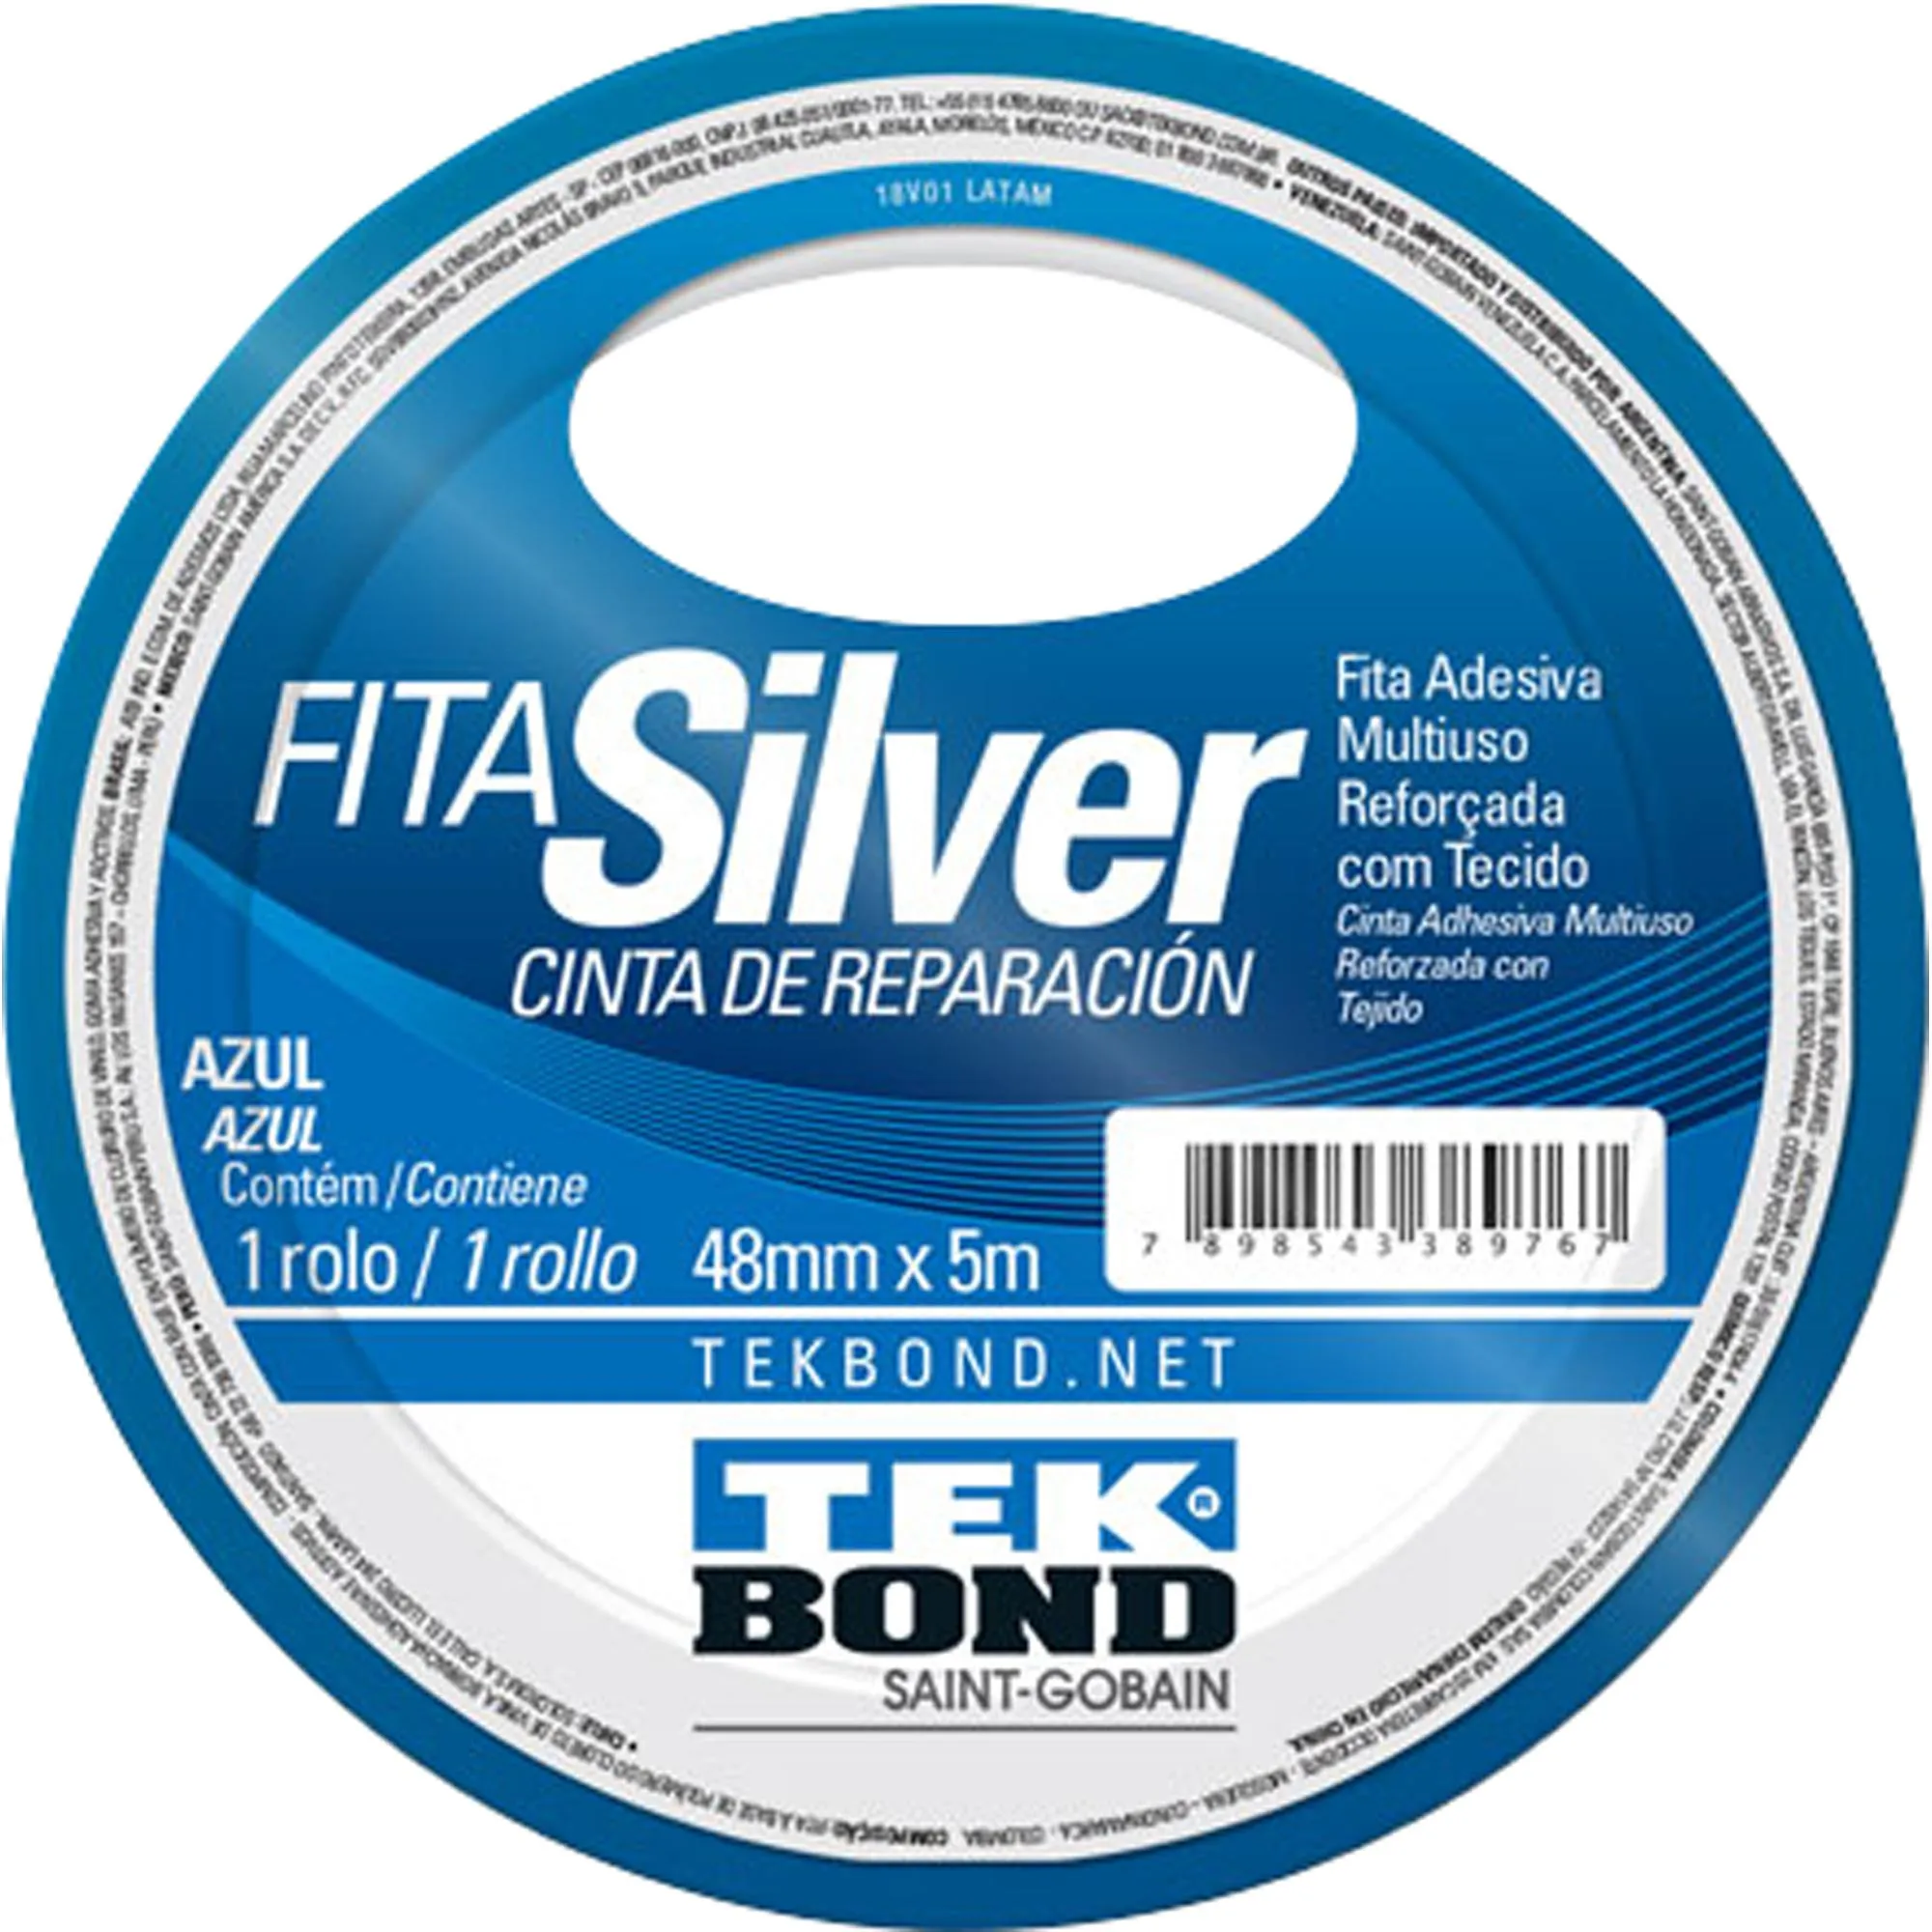 Fita Silver 48mmx5m Azul Tekbond por 8,99 à vista no boleto/pix ou parcele em até 1x sem juros. Compre na loja Mundomax!